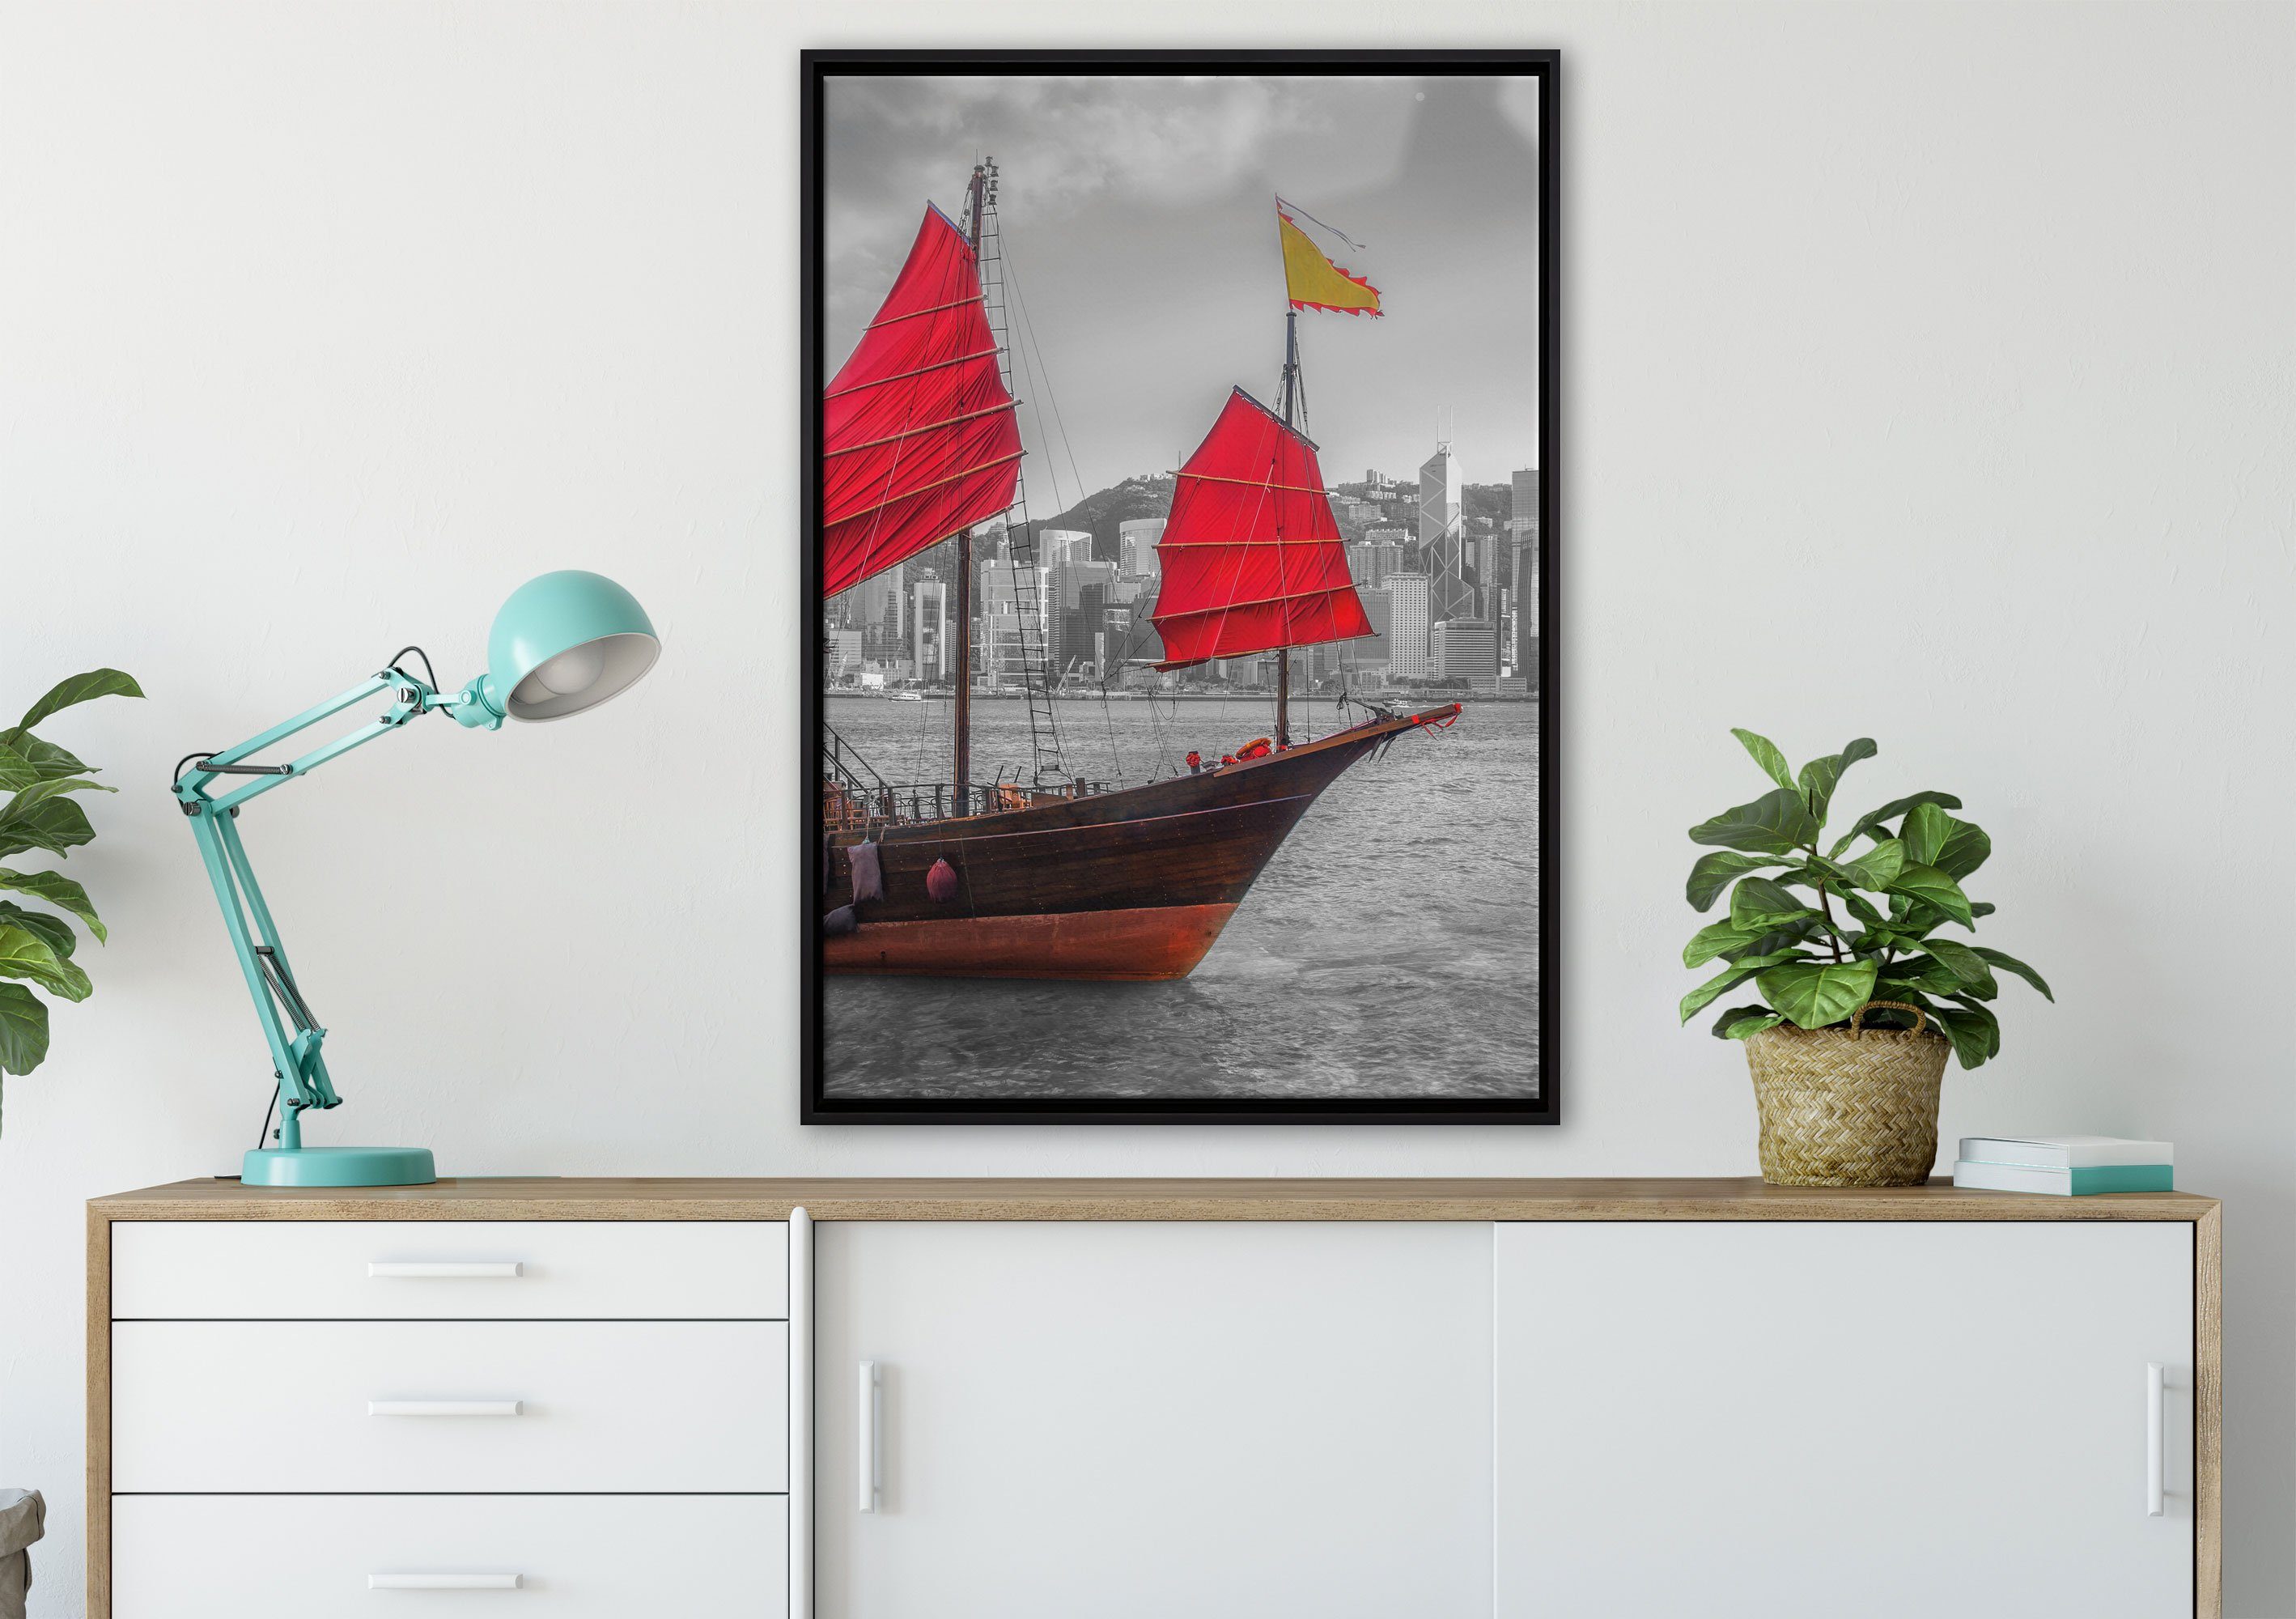 Pixxprint Leinwandbild Segelschiff mit roten einem in fertig (1 gefasst, bespannt, Segeln, Zackenaufhänger Schattenfugen-Bilderrahmen St), inkl. Wanddekoration Leinwandbild